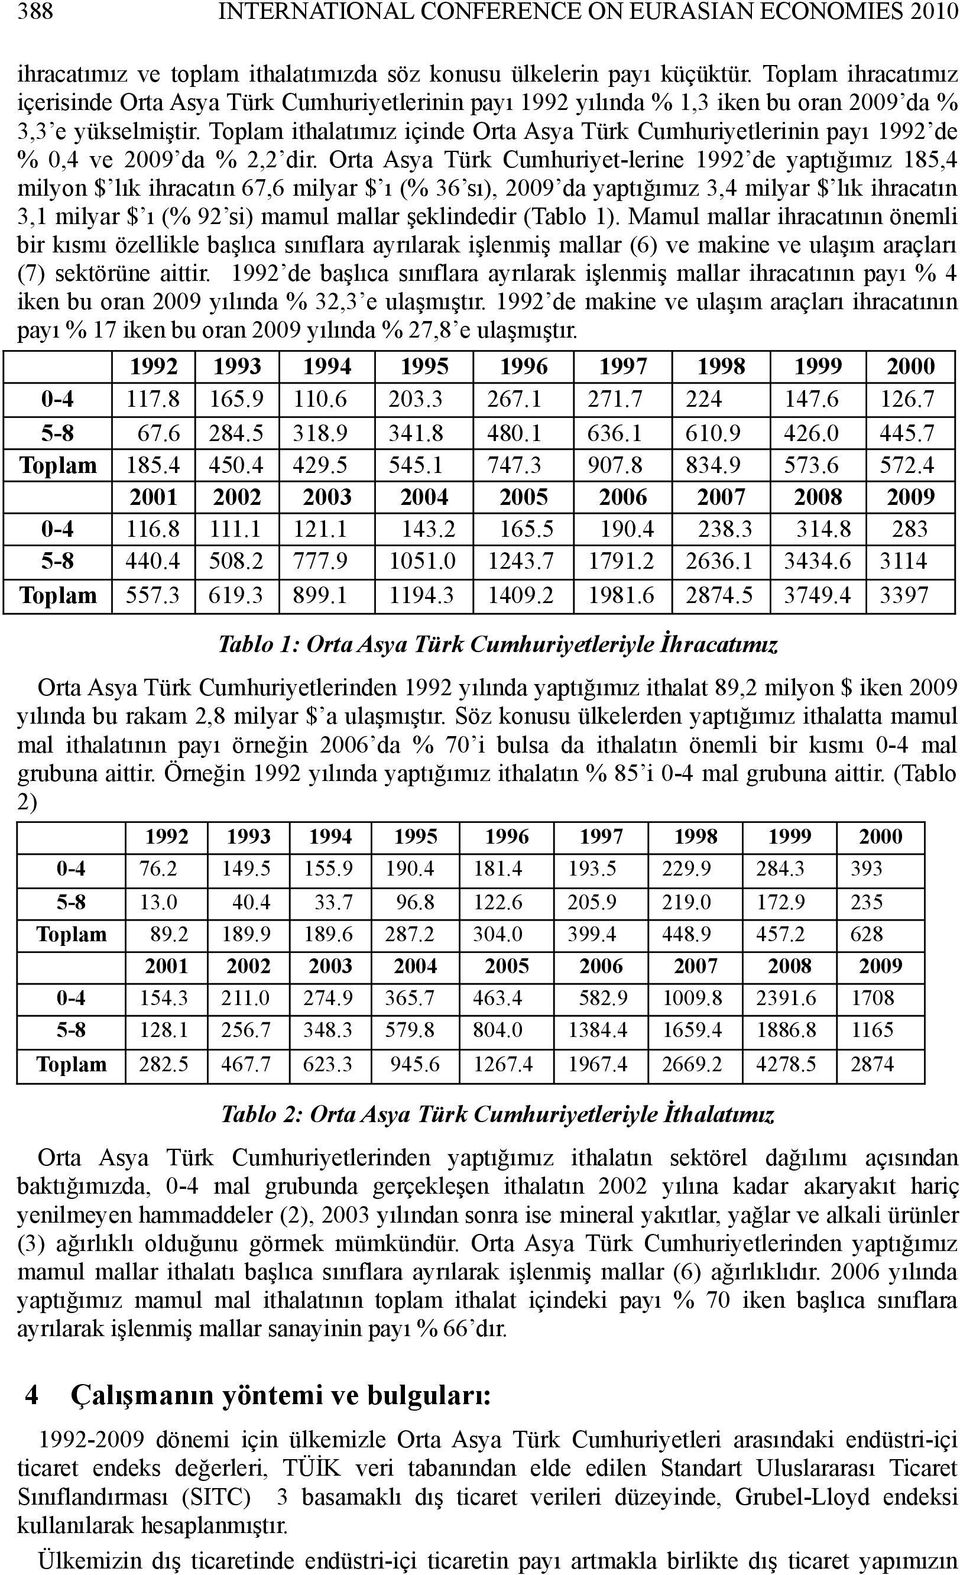 Toplam ithalatımız içinde Orta Asya Türk Cumhuriyetlerinin payı 1992 de % 0,4 ve 2009 da % 2,2 dir.